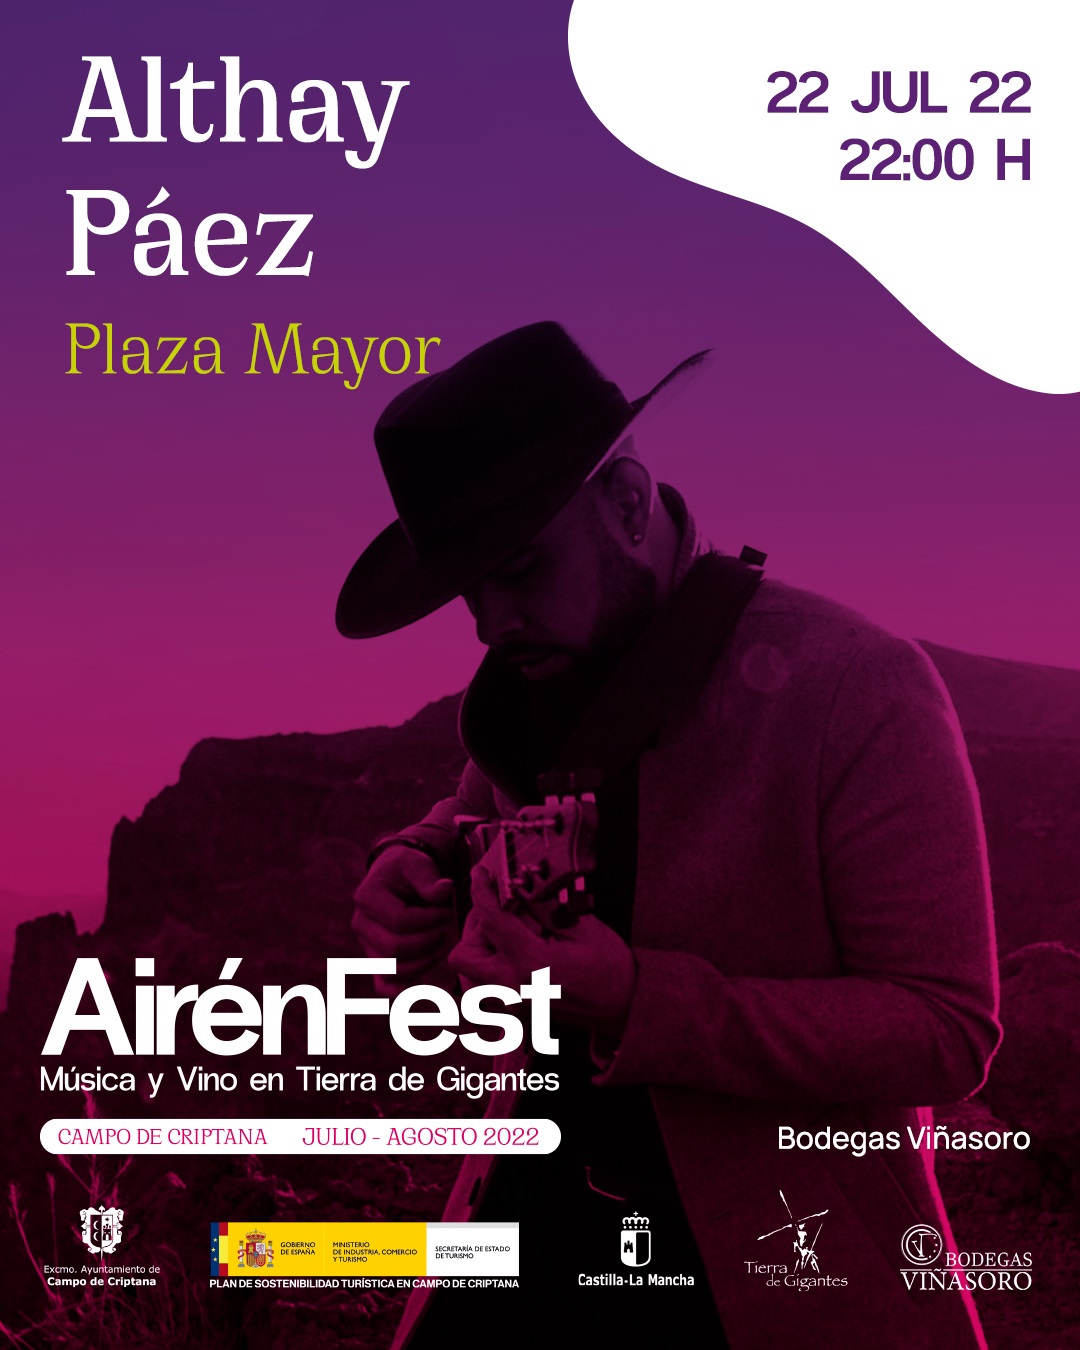 El timplista canario Altahy Páez amenizará la noche de este viernes en Campo de Criptana dentro del AirenFest